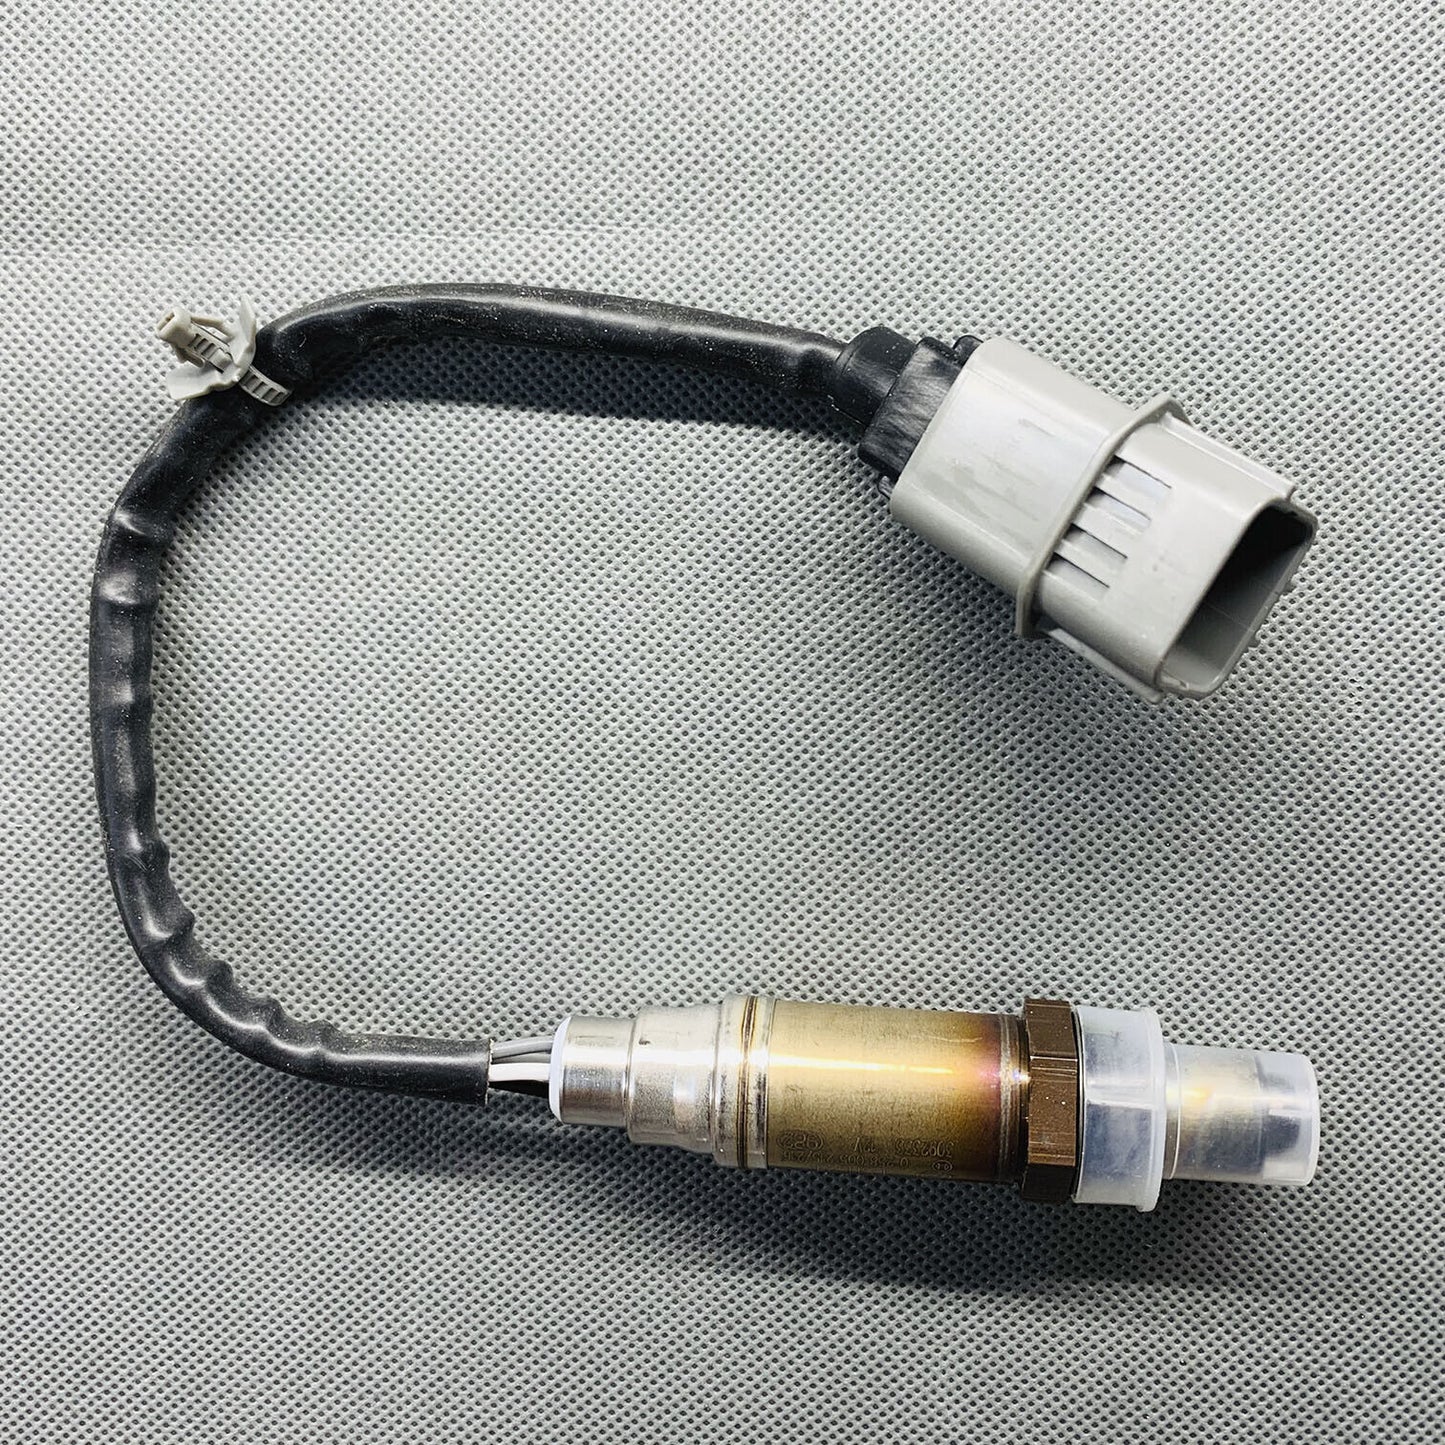 OE GENUINE Oxygen Sensor 226A0-7J501 2PCS For Nissan Primera Traveller 2.0